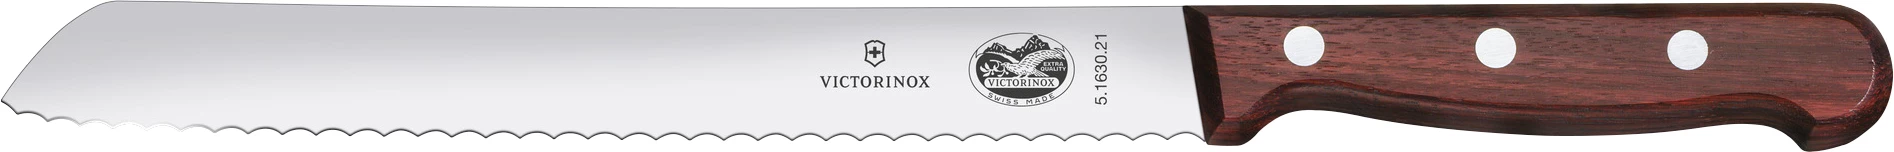 Victorinox brødkniv med træskaft, skrå, 21 cm